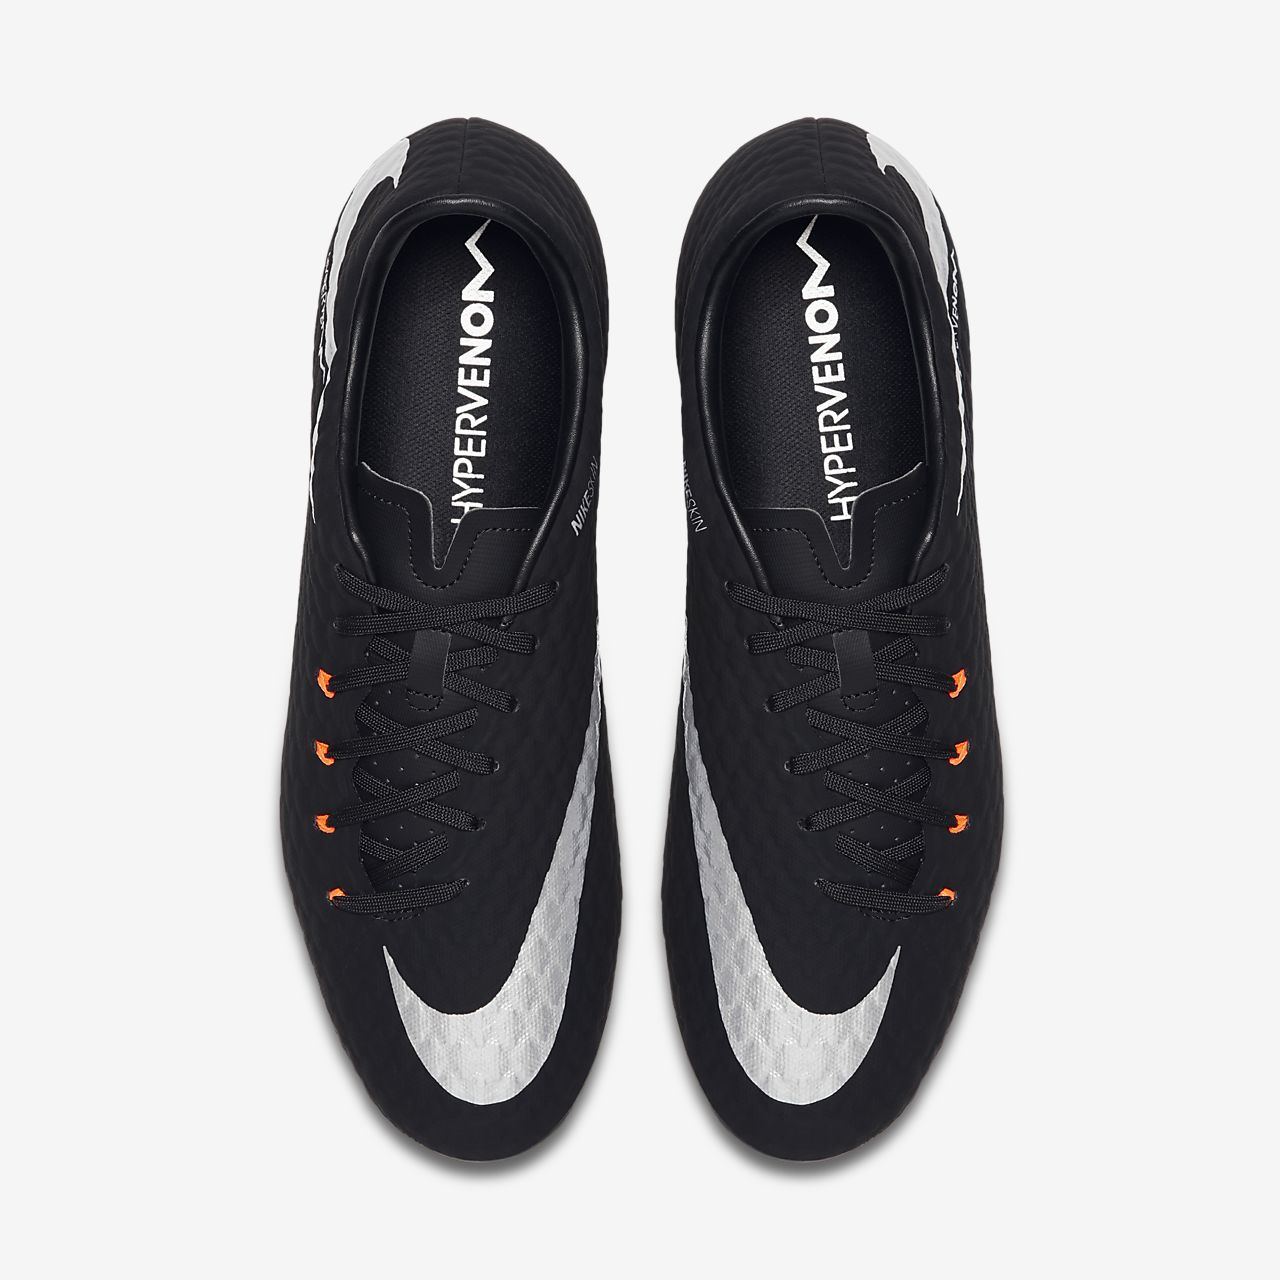 Nike Hypervenom Phantom 3 DF AG Pro Men's Soccer Cleats